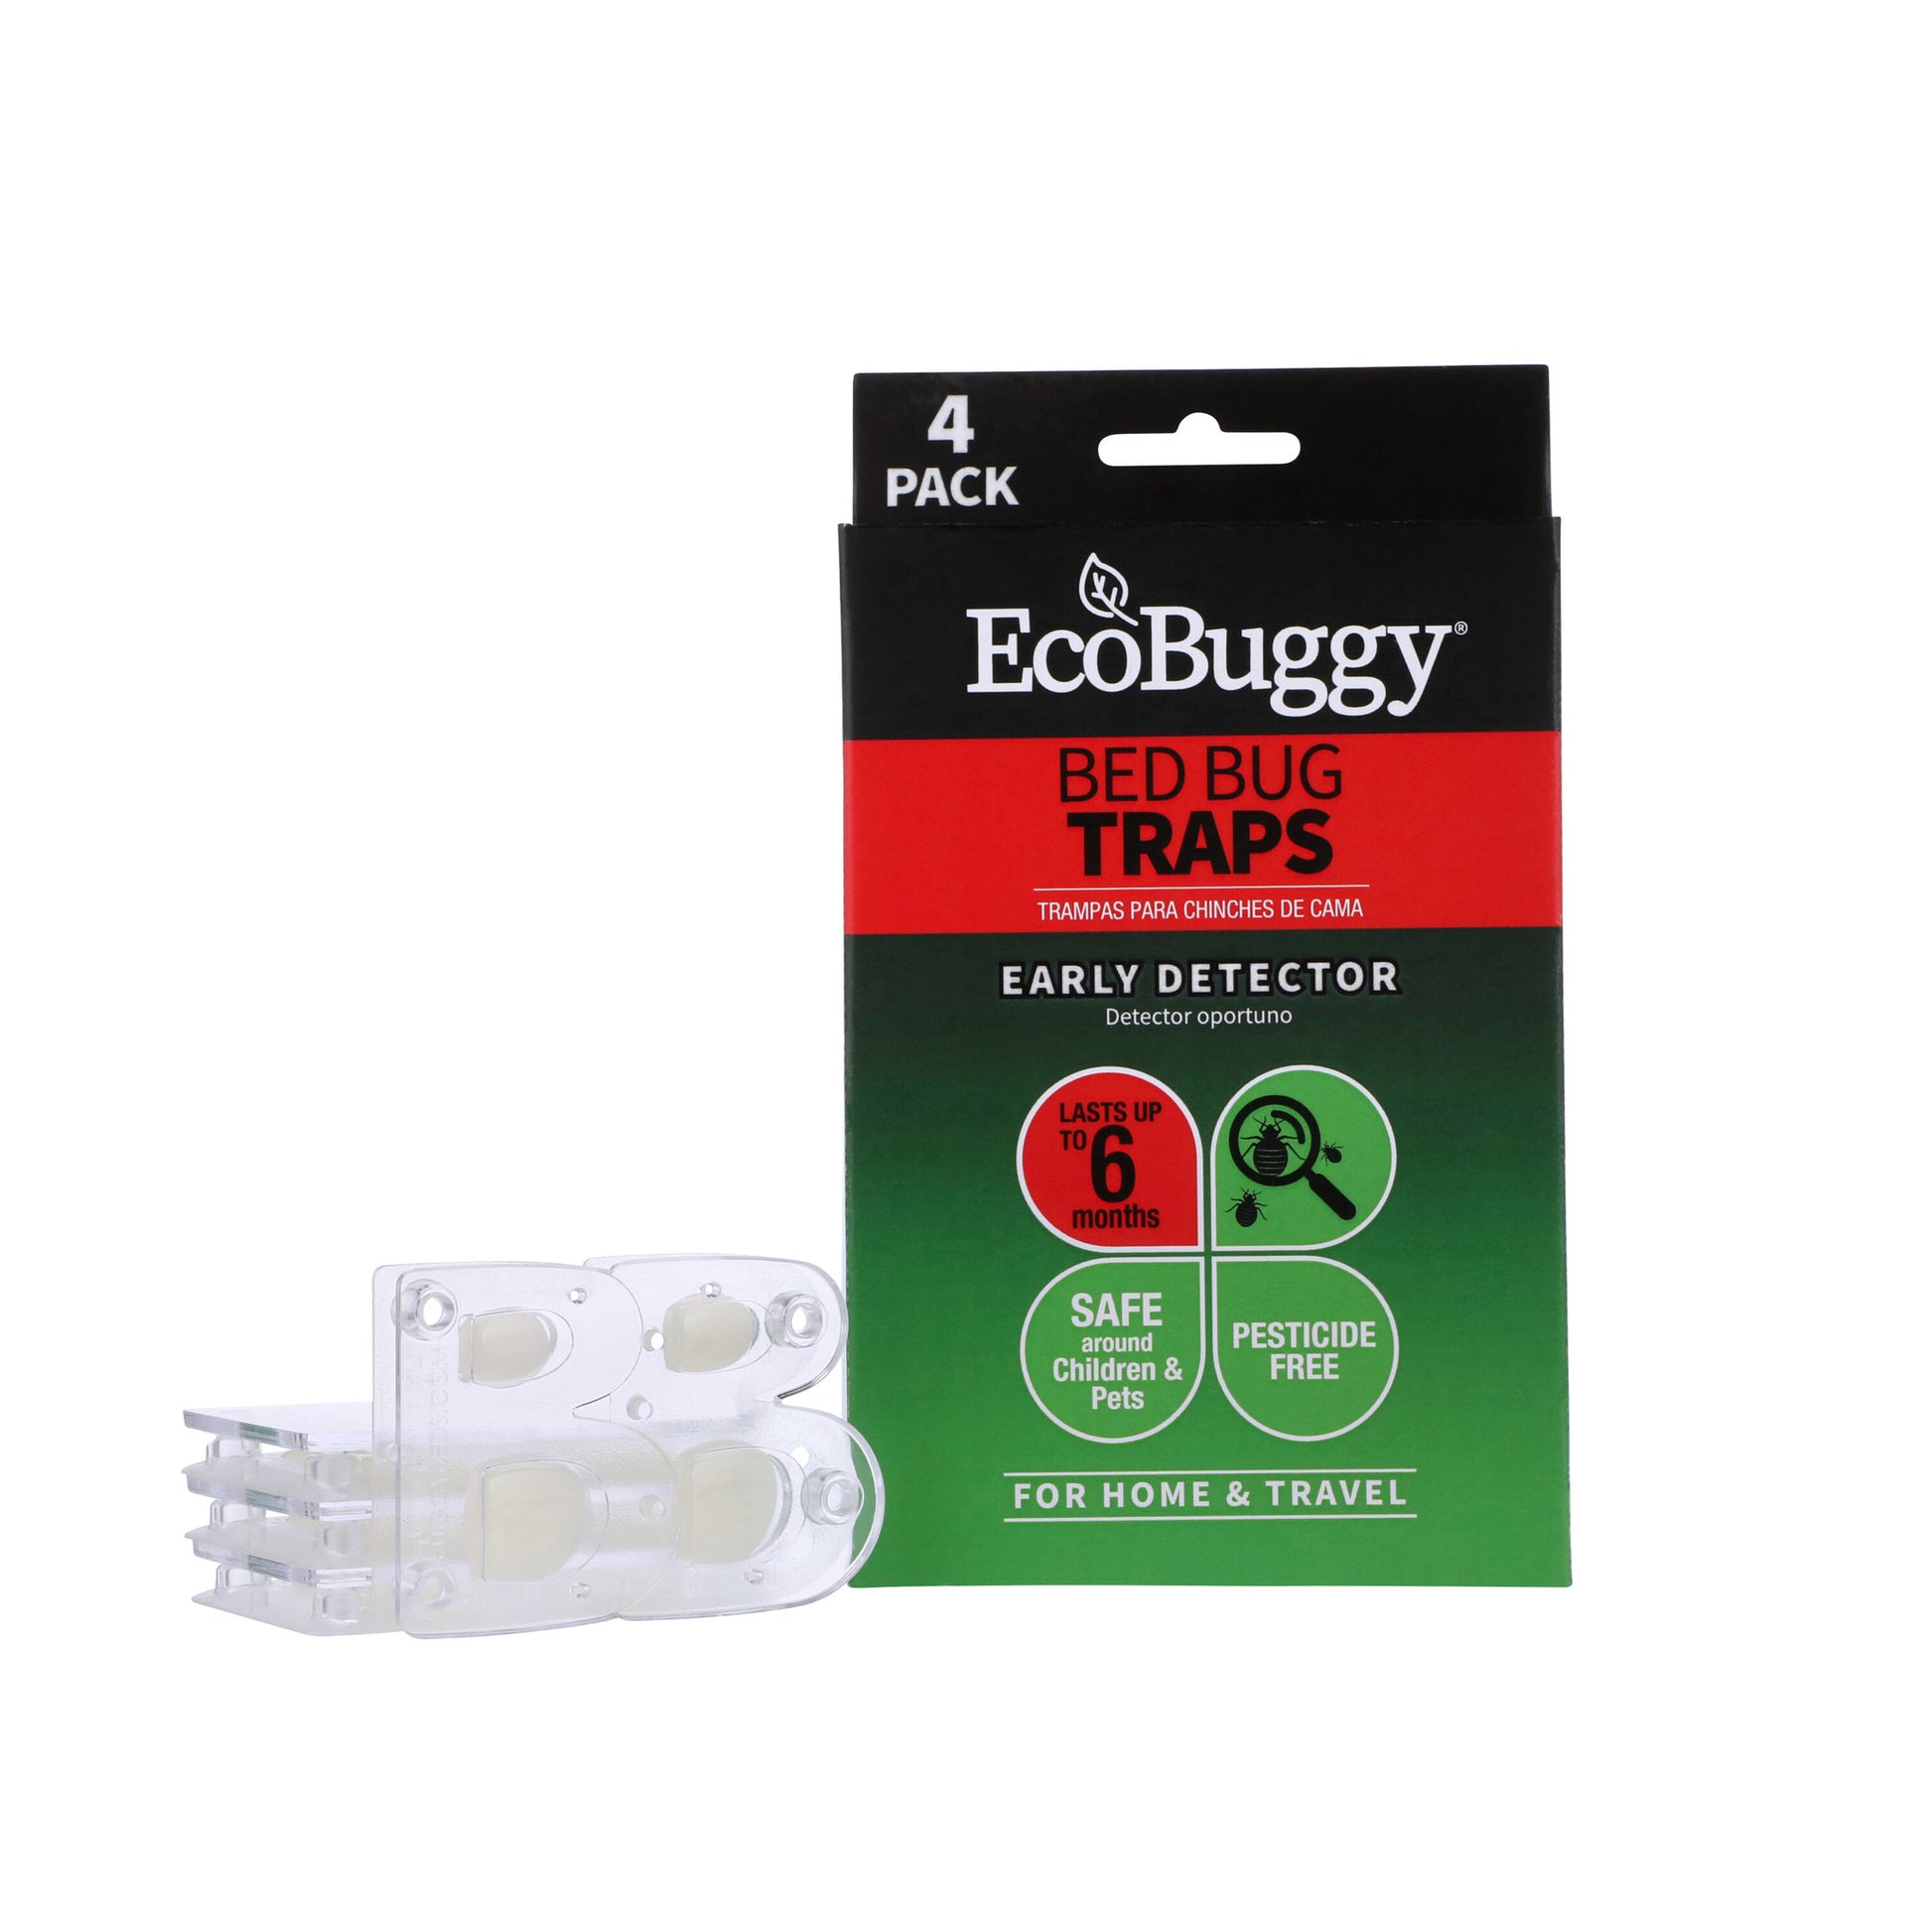 Buggybeds Bed Bug Glue Trap - 4pk : Target